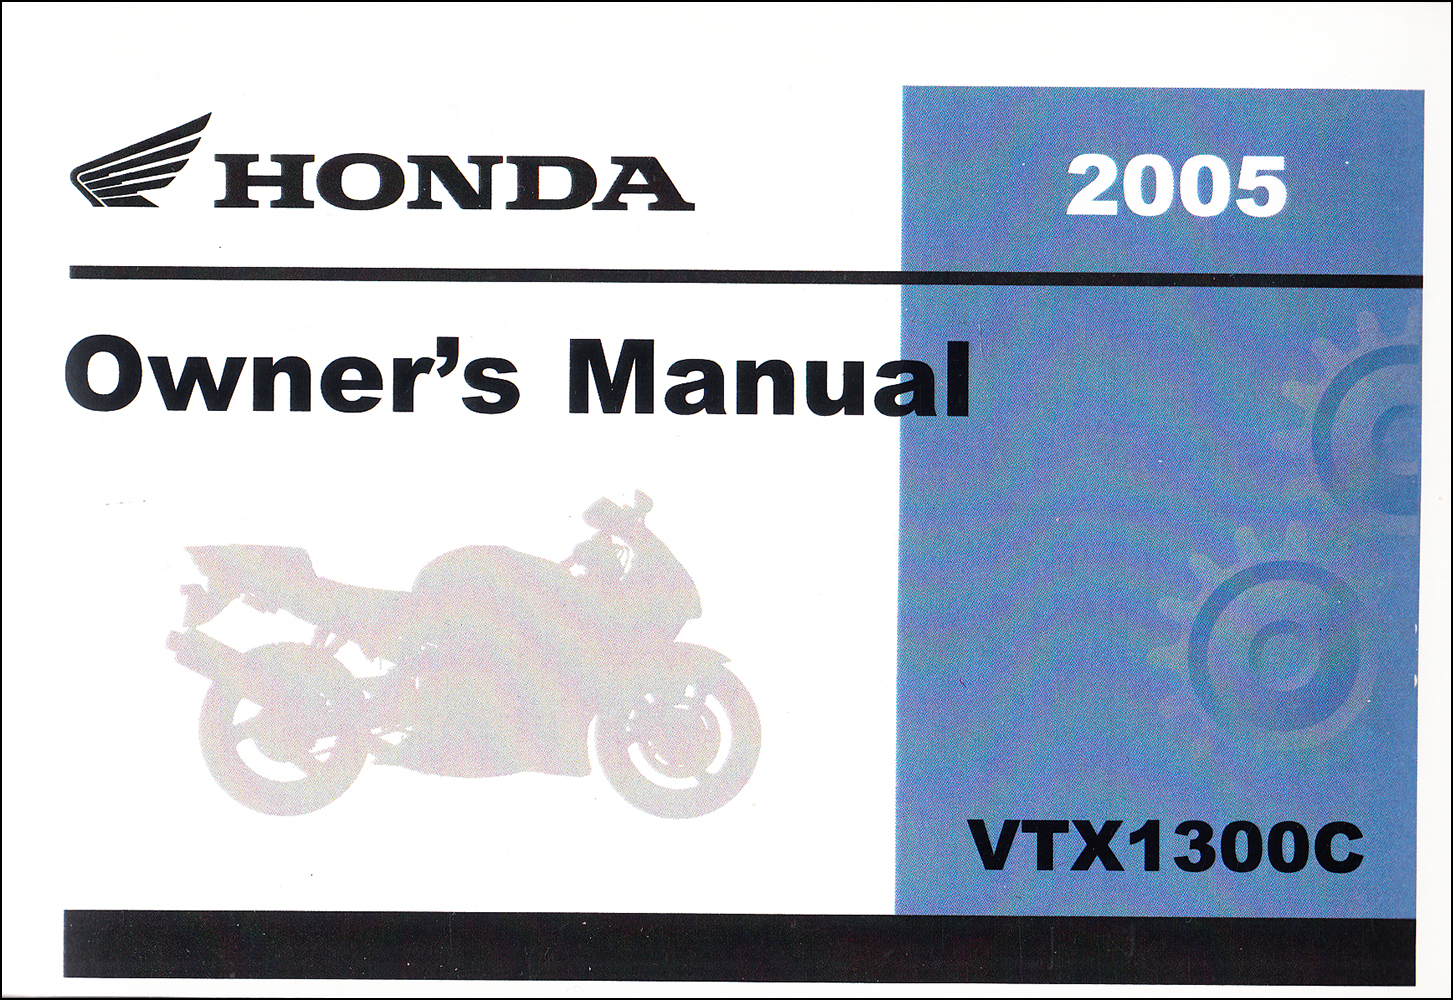 2005 Honda VTX 1300C Motorcycle Owner's Manual Reprint